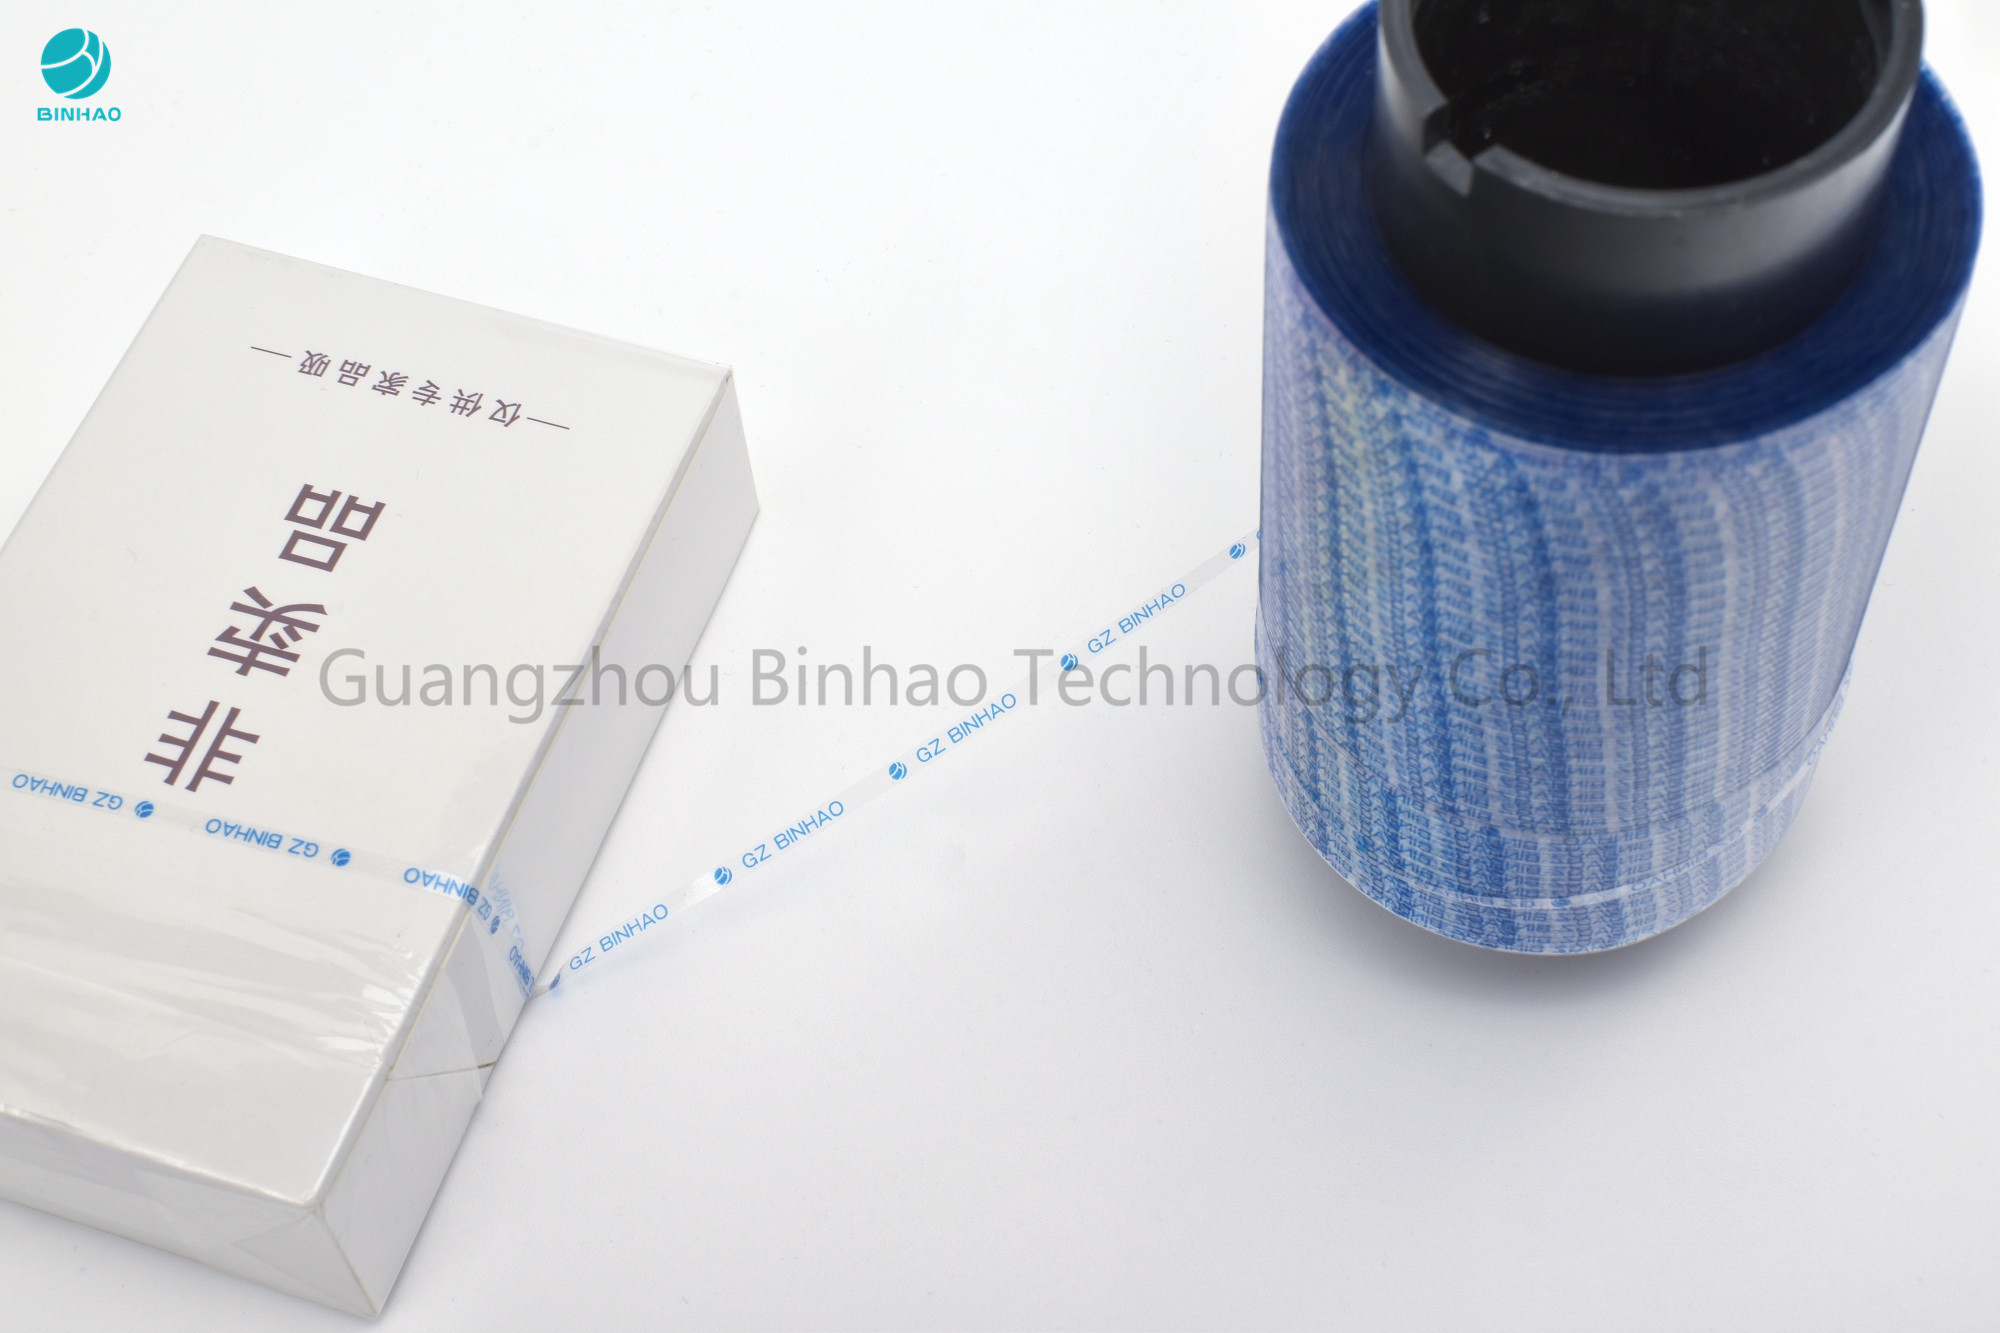 نوار چسب نواری اشک آور هولوگرافیک آبی Binhao جدید 1.6 میلی متر با رنگ های چند رنگ خود چاپ شده